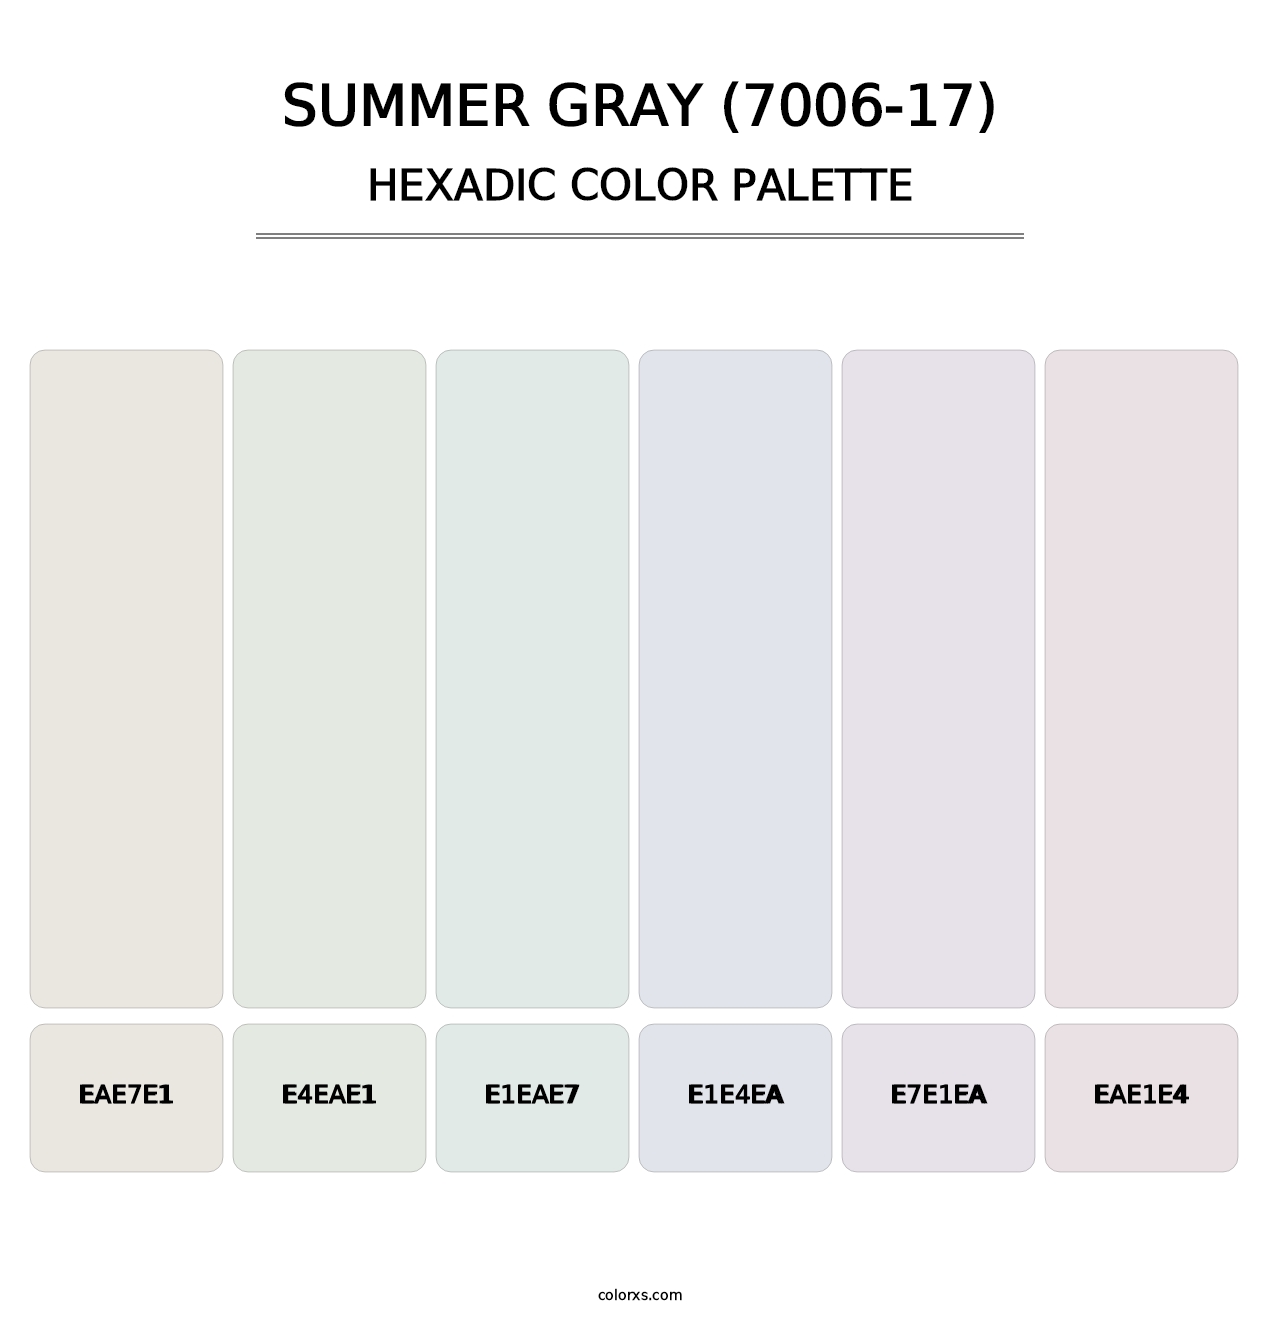 Summer Gray (7006-17) - Hexadic Color Palette